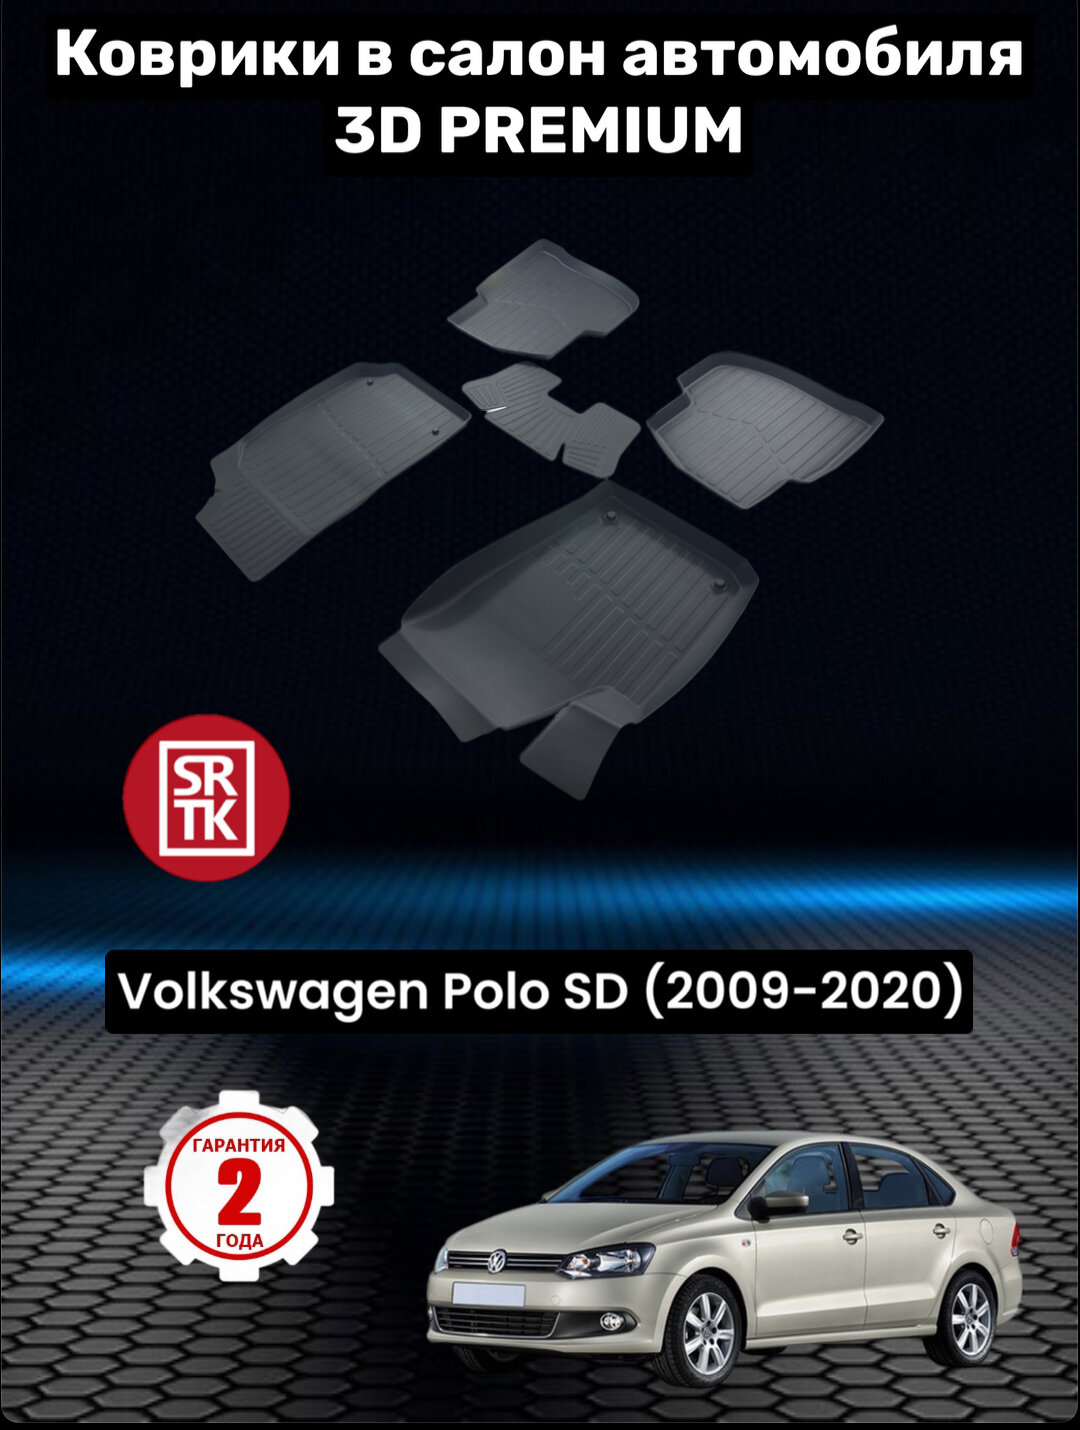 Коврики резиновые в салон для Фольксваген Поло Седан /Volkswagen Polo SD (2009-2020) 3D PREMIUM/ SRTK (Саранск) Комплект в салон